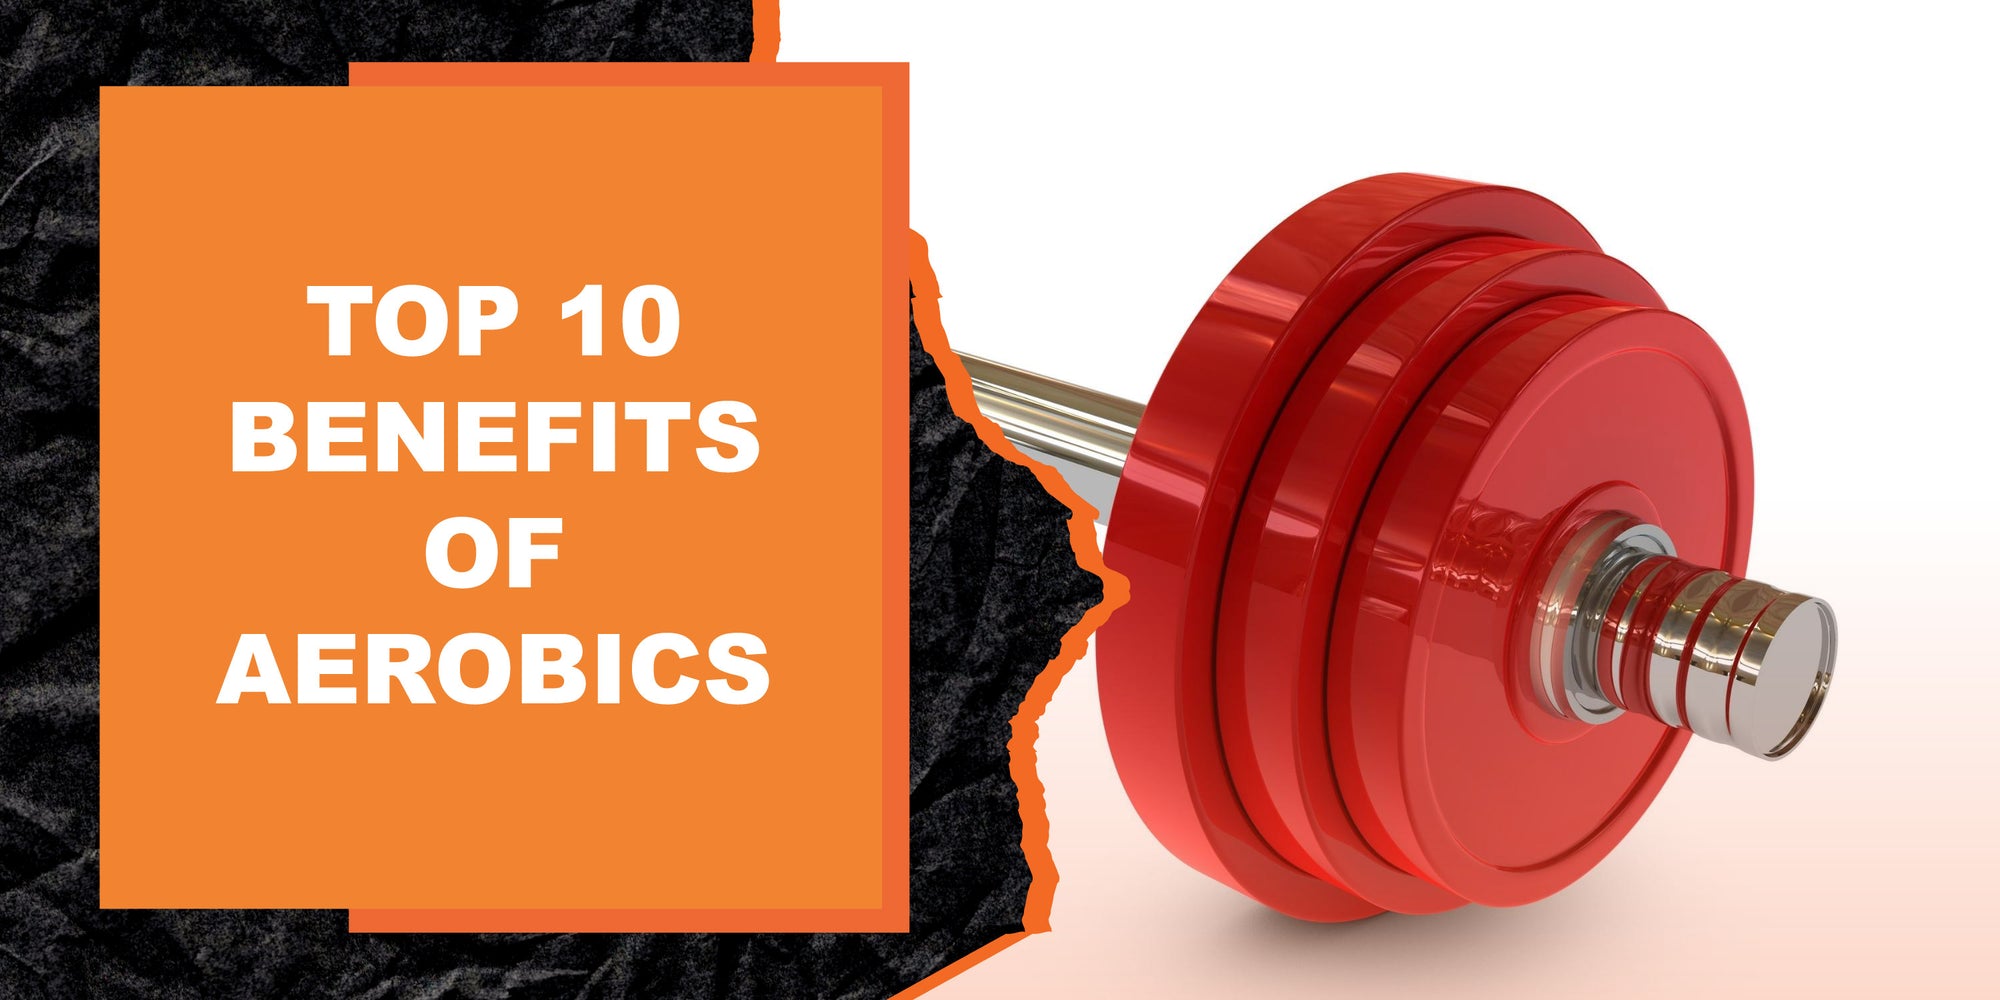 Top 10 Benefits of Aerobics